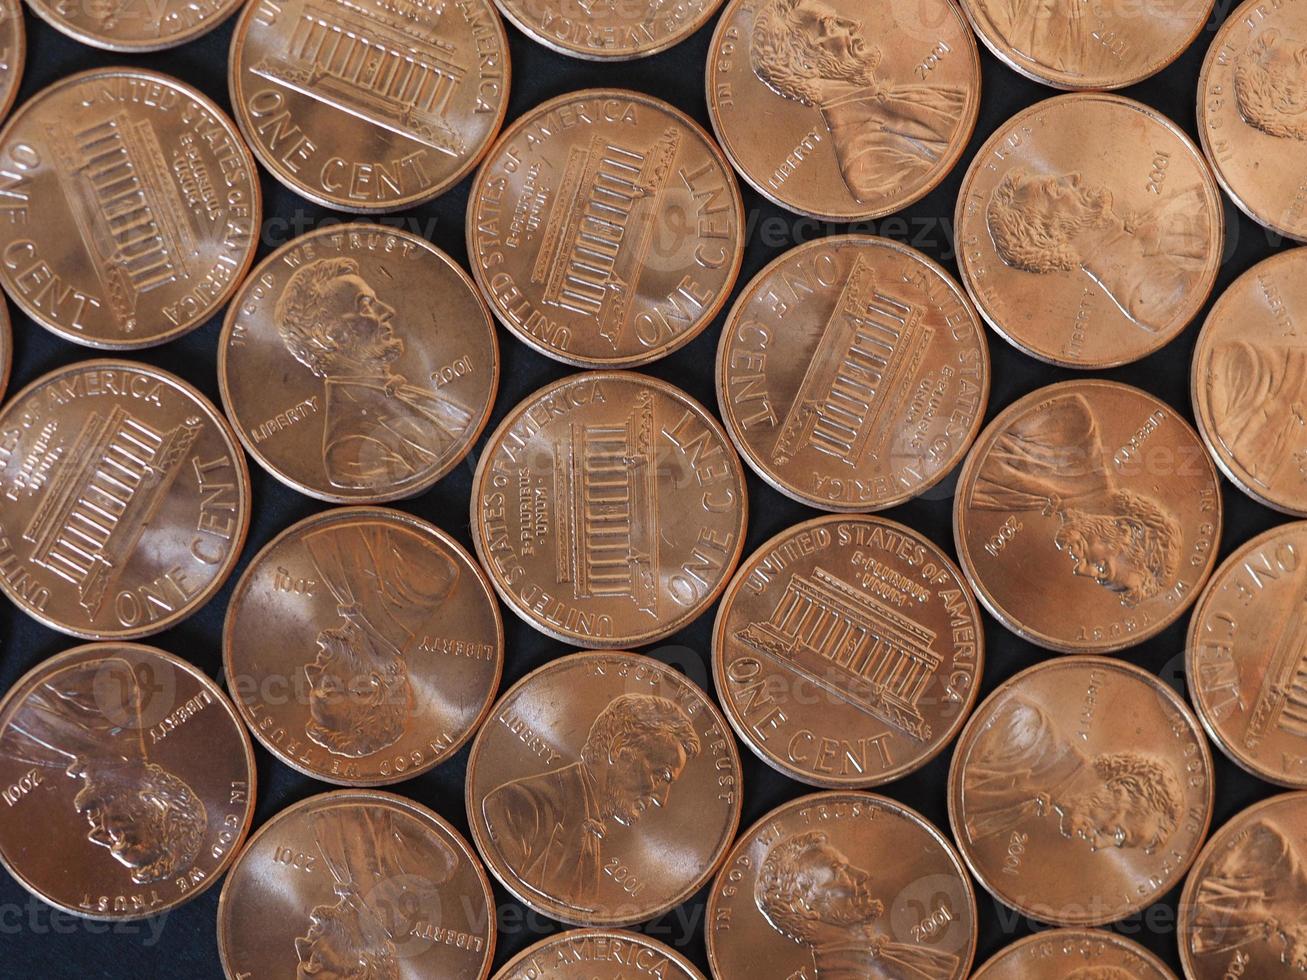 en cent dollar mynt, USA över svart foto